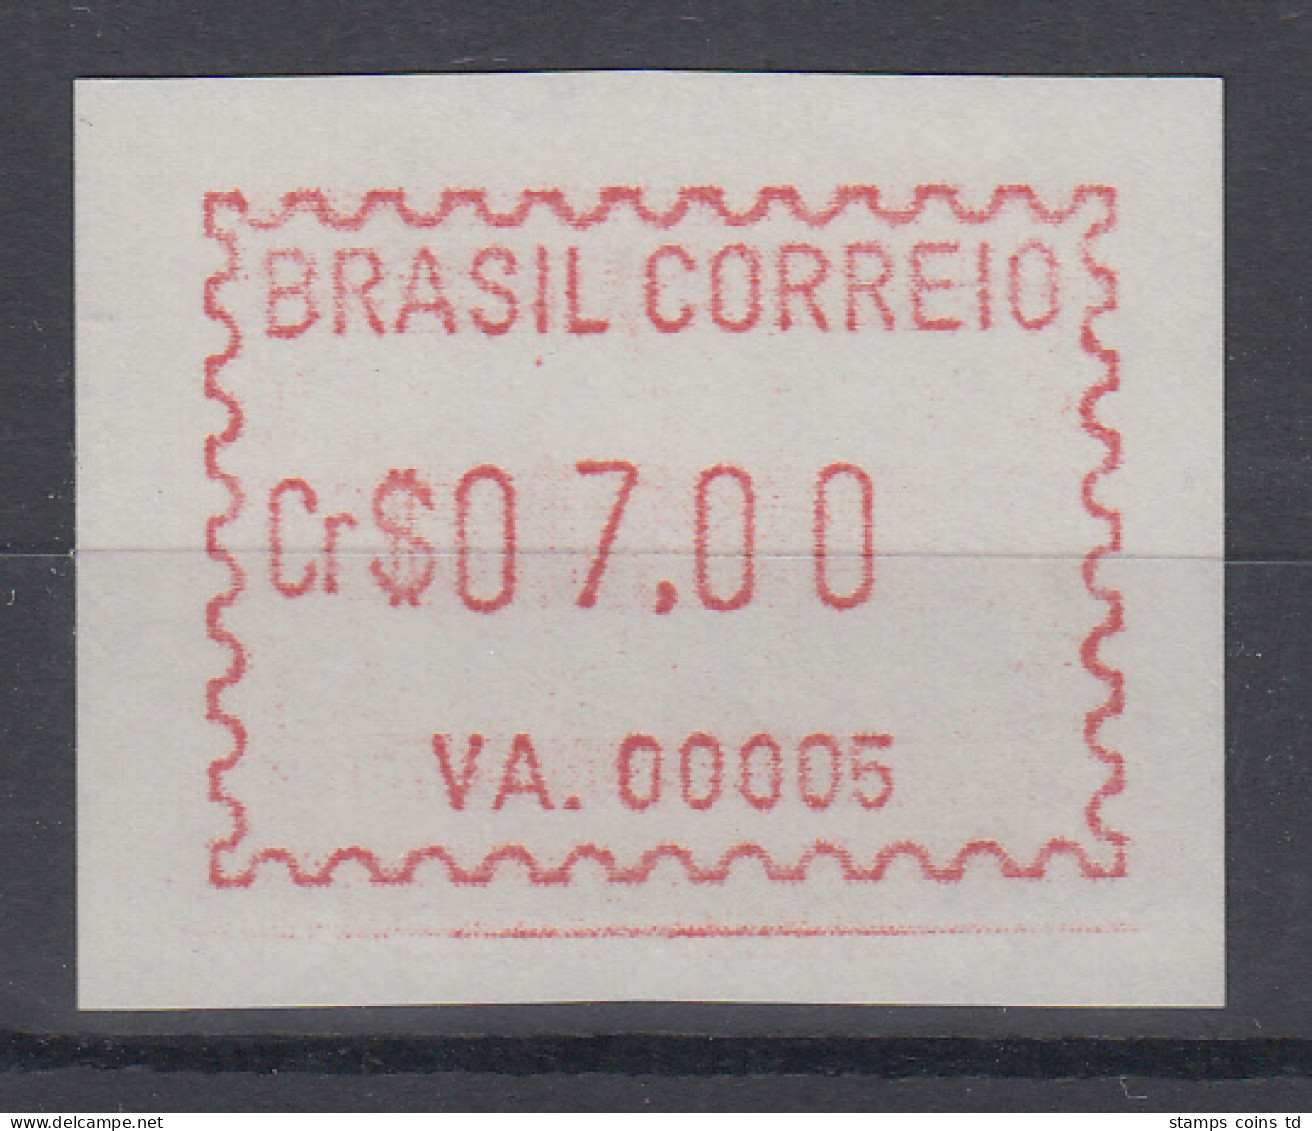 Brasilien FRAMA-ATM VA.00005, Wert 07,00 Cr$, Von VS **  - Automatenmarken (Frama)